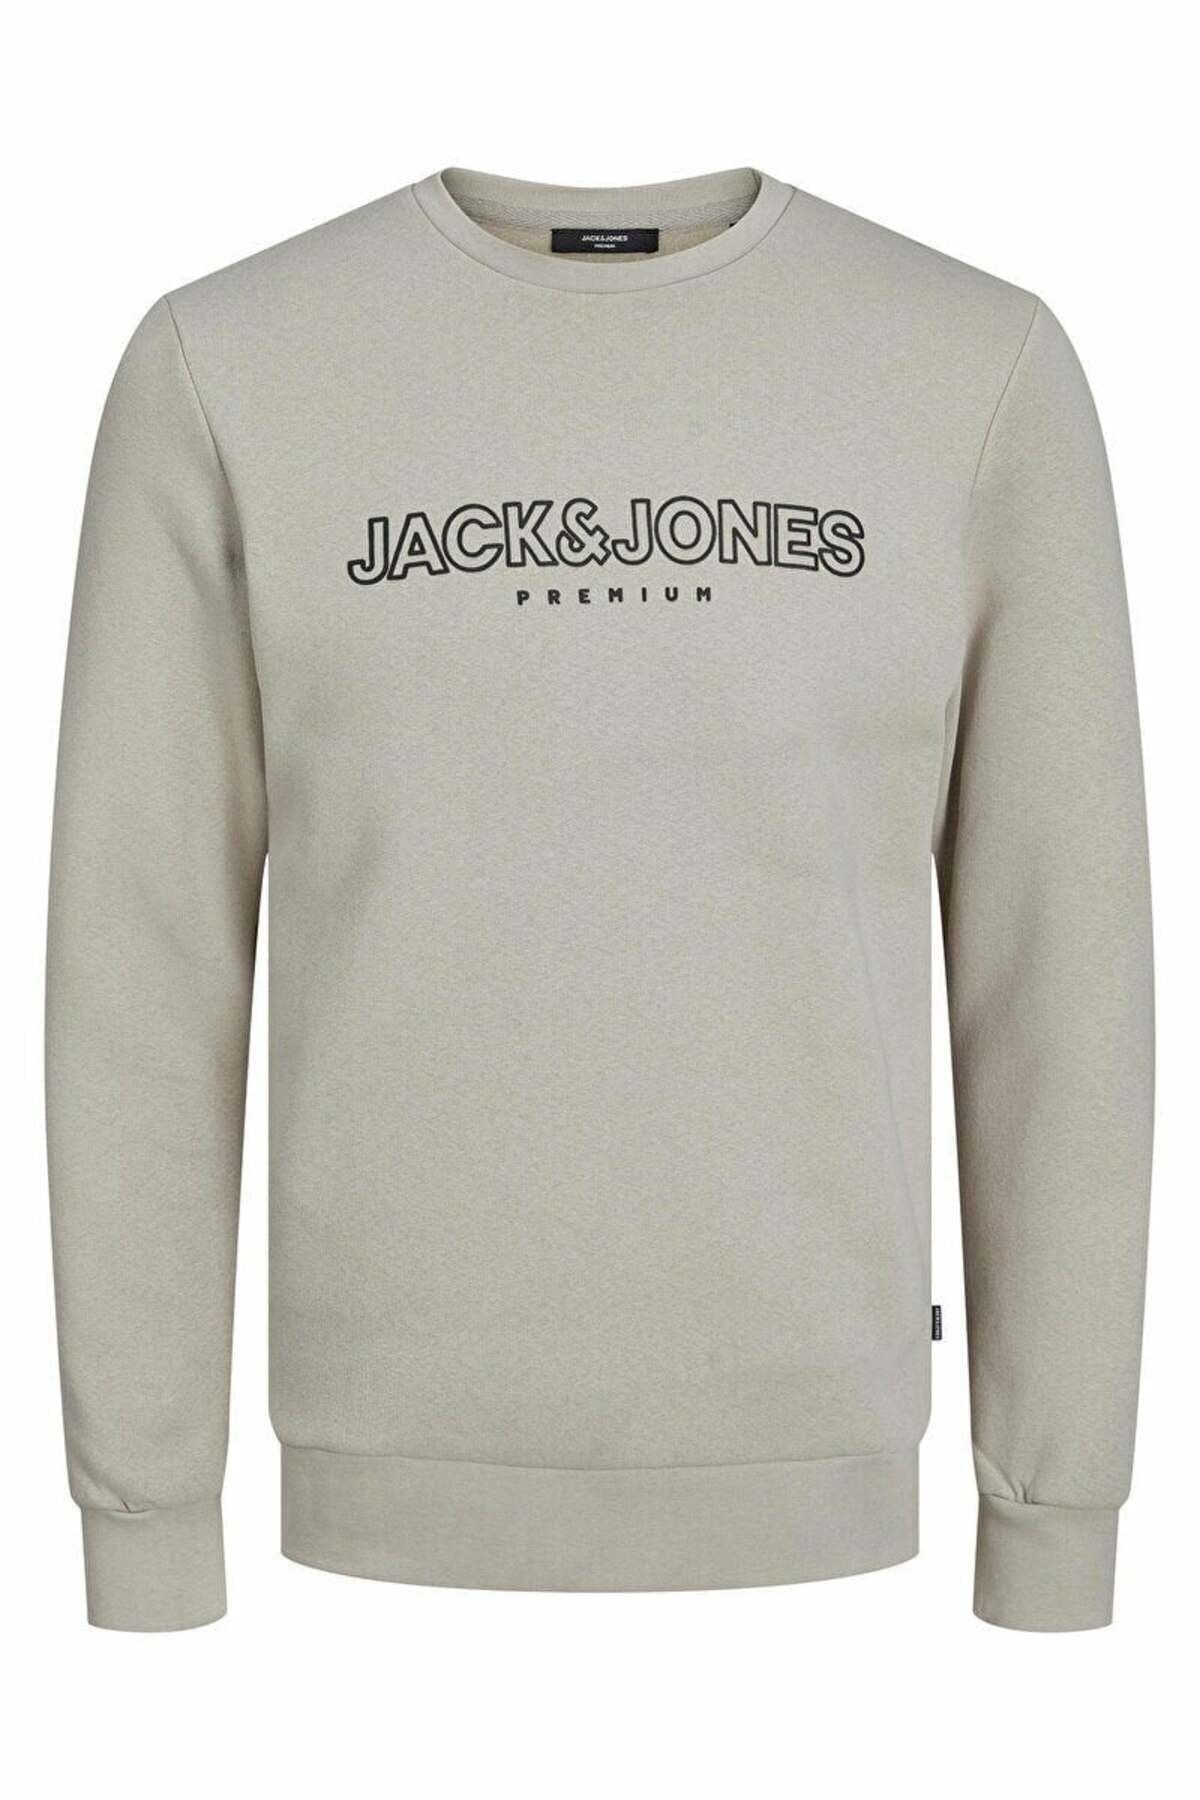 Jack & Jones - Sweatshirt